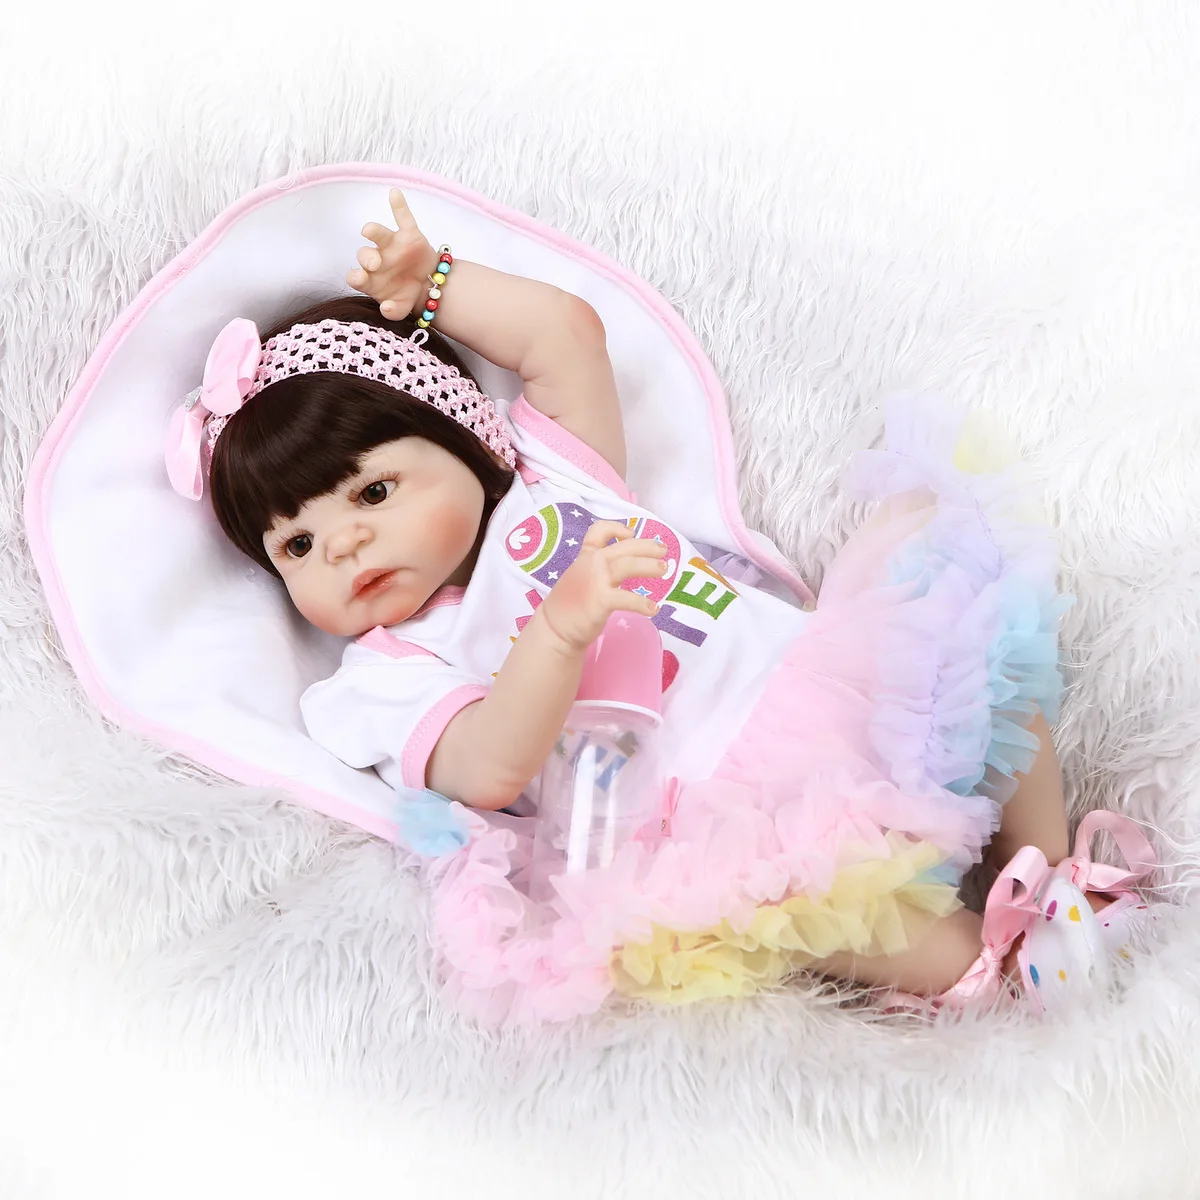 Полная резиновые Моделирование Baby Doll прекрасный дом игрушки мягкие принцесса силикона Reborn